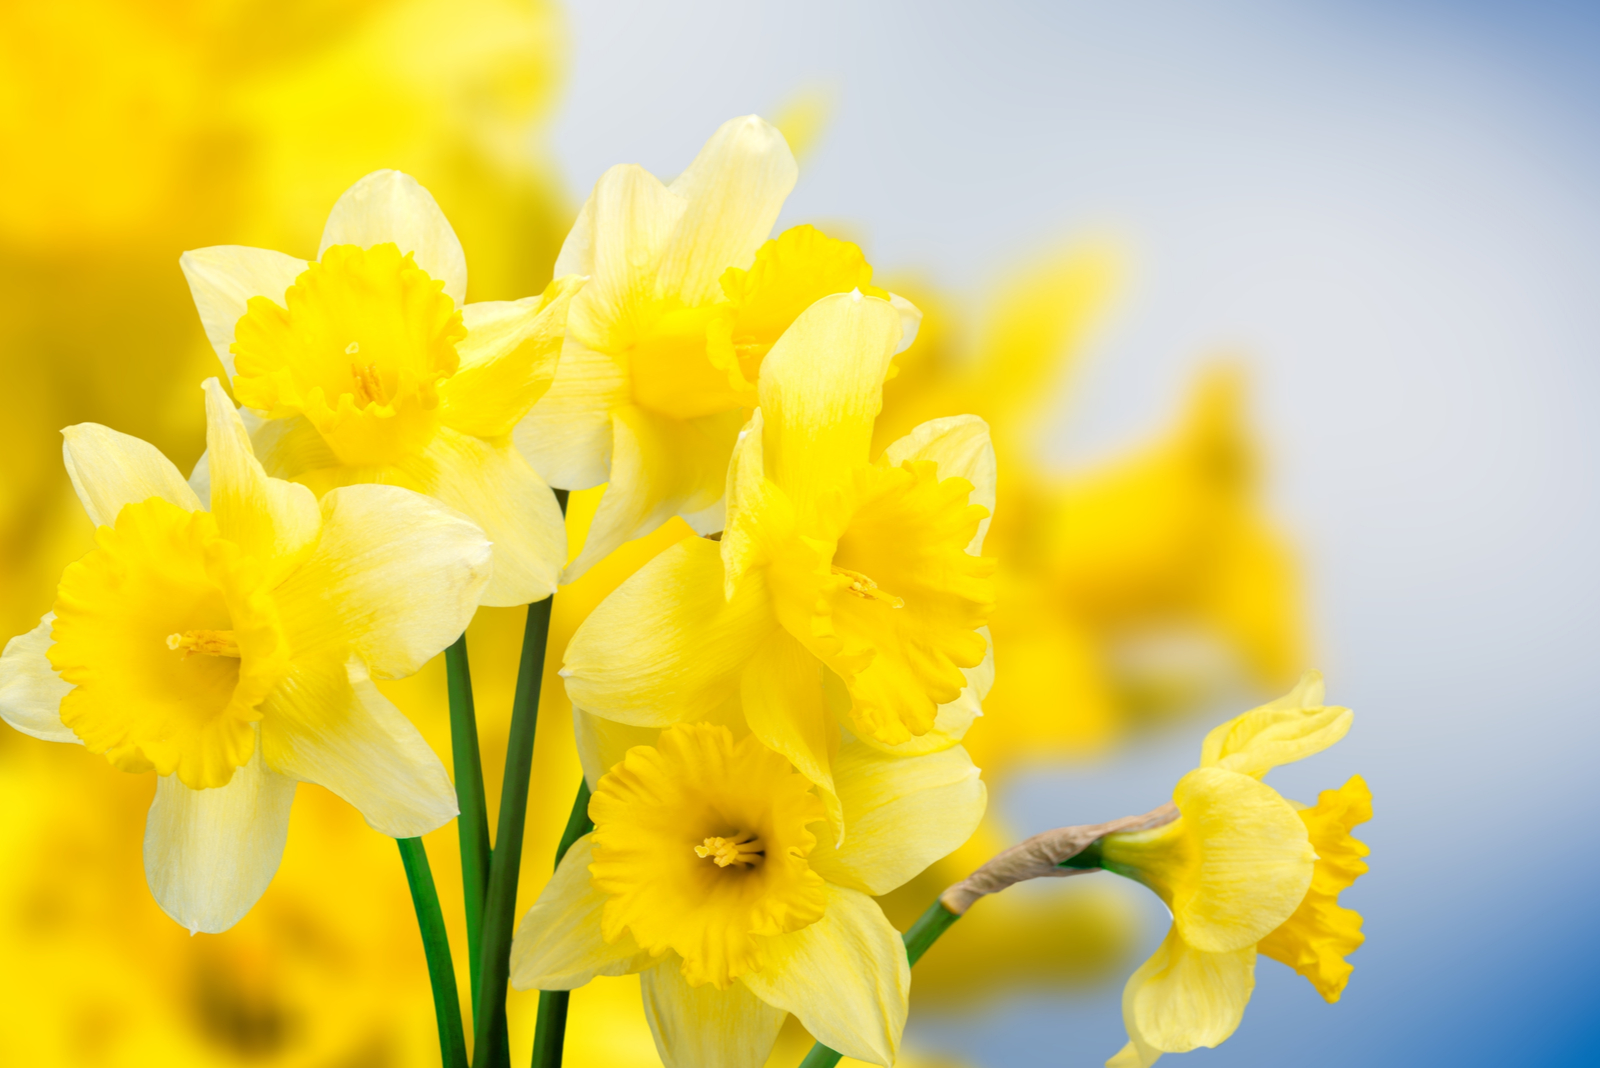 Fresh beautiful Daffodil flowers in gardens